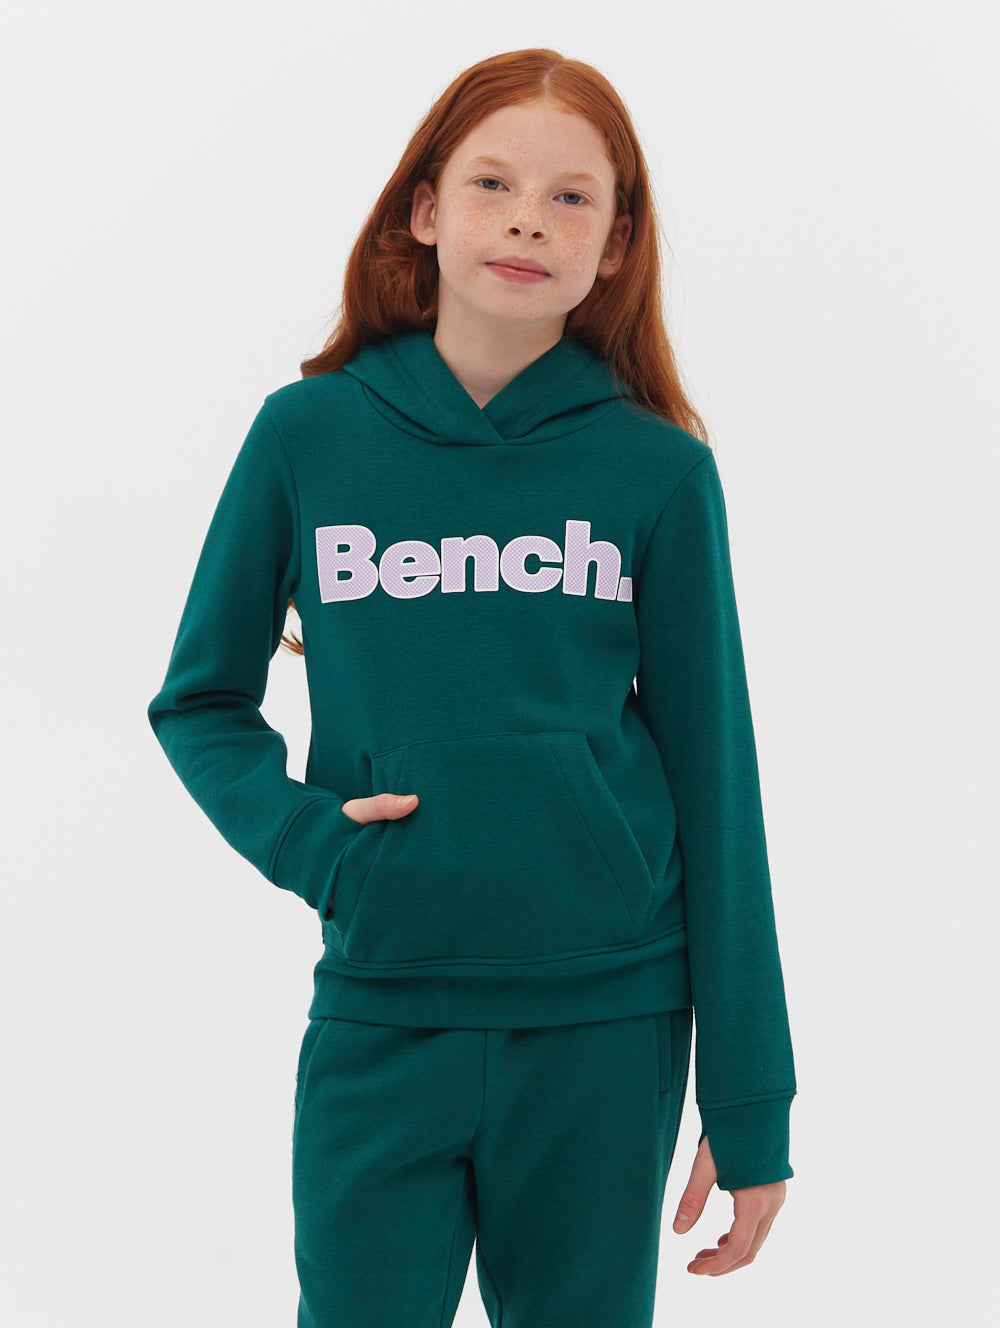 Girls - Bench